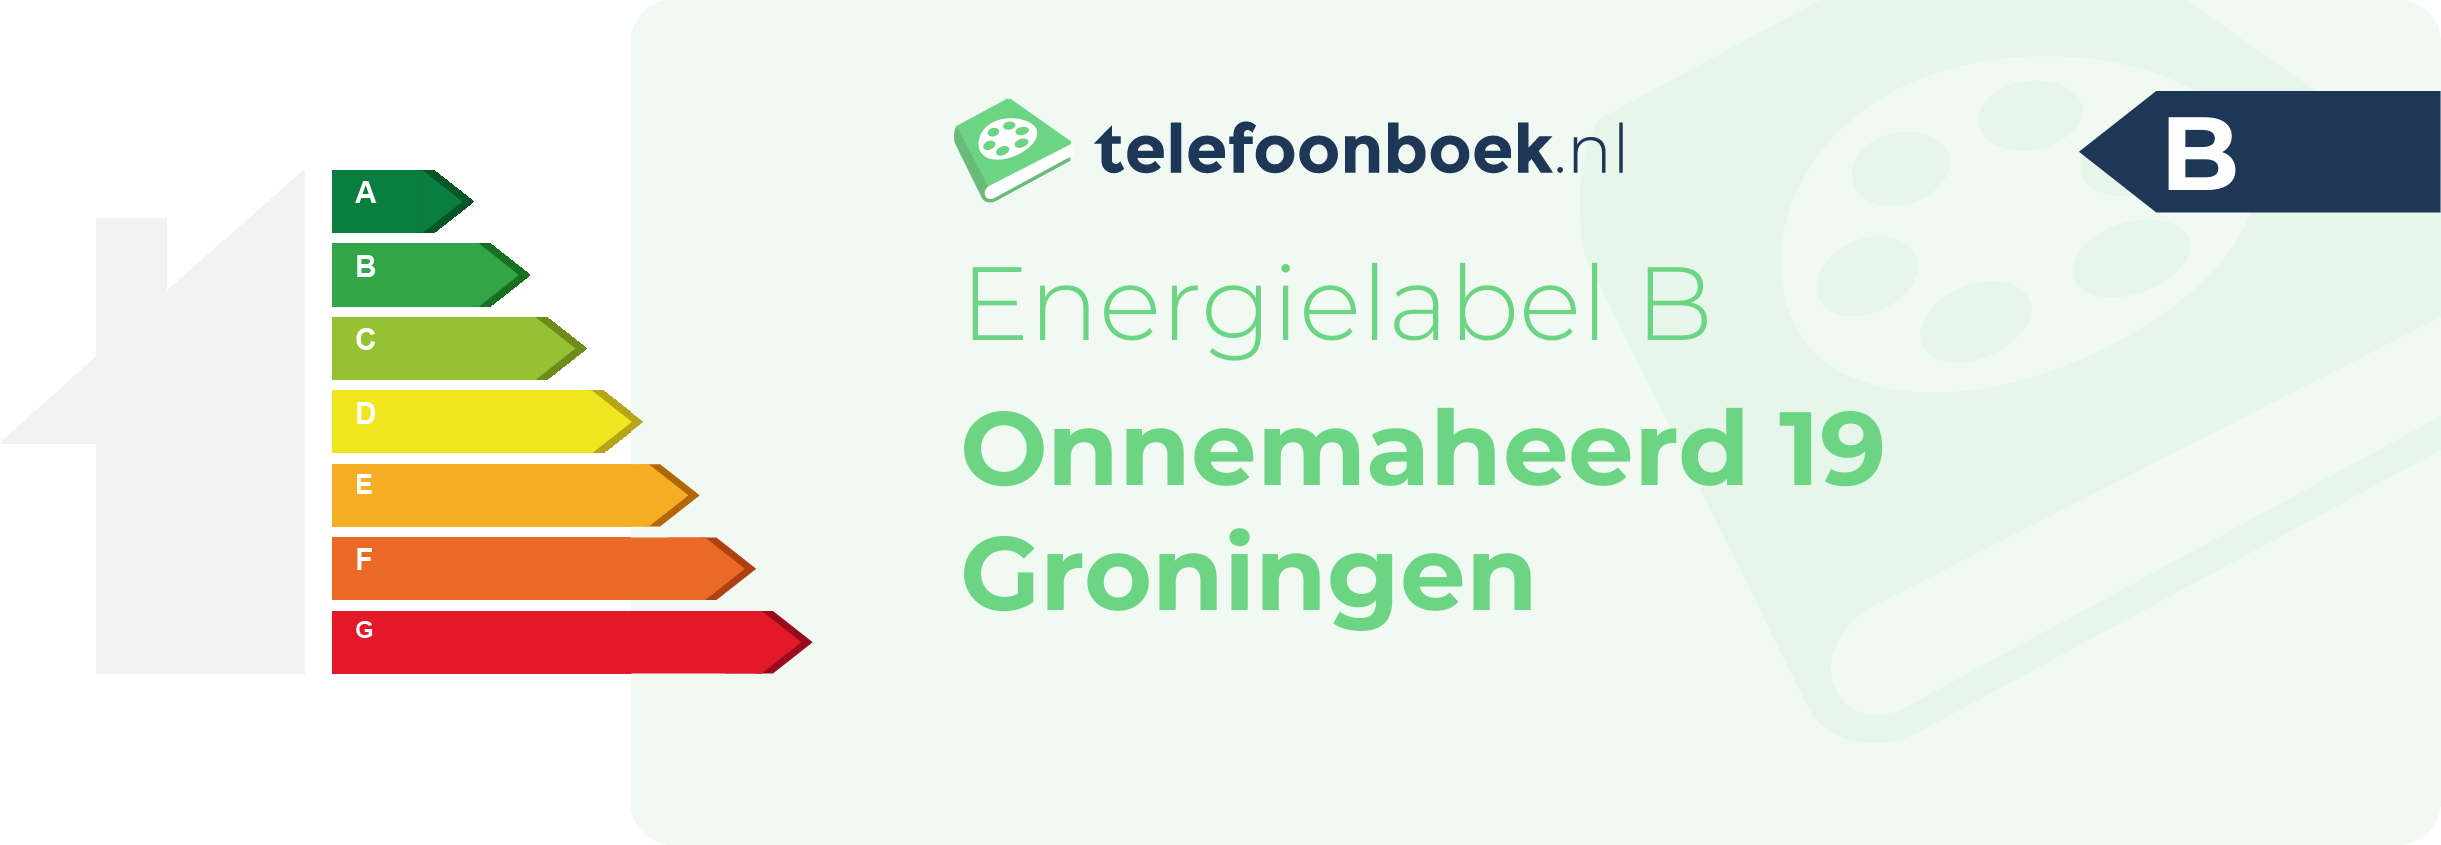 Energielabel Onnemaheerd 19 Groningen